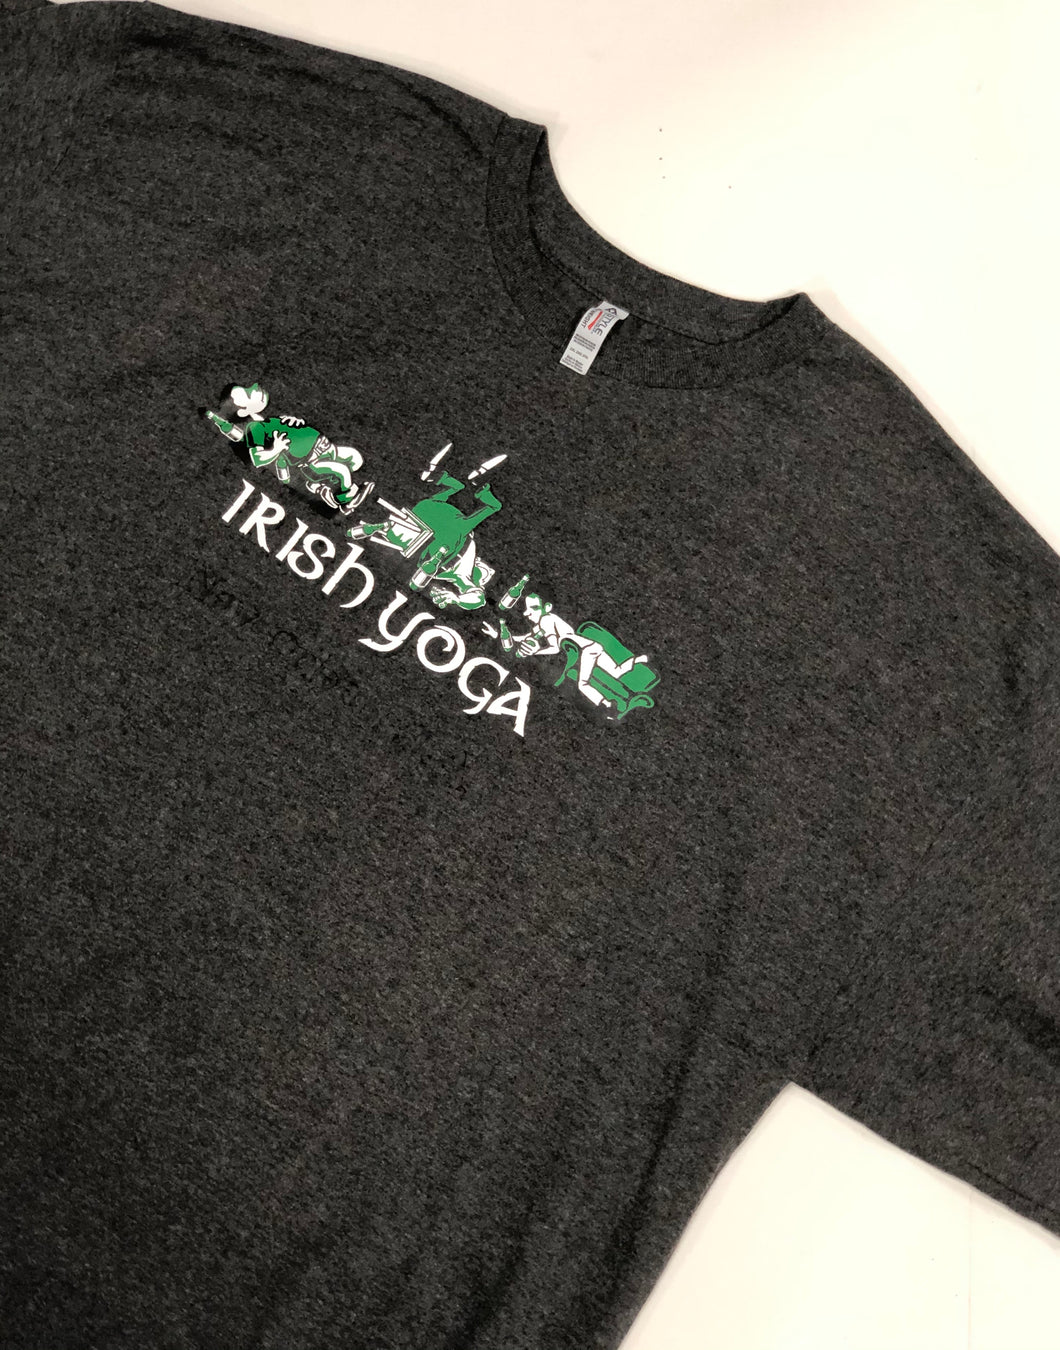 Irish Yoga T-shirt - Mardi Gras Creations